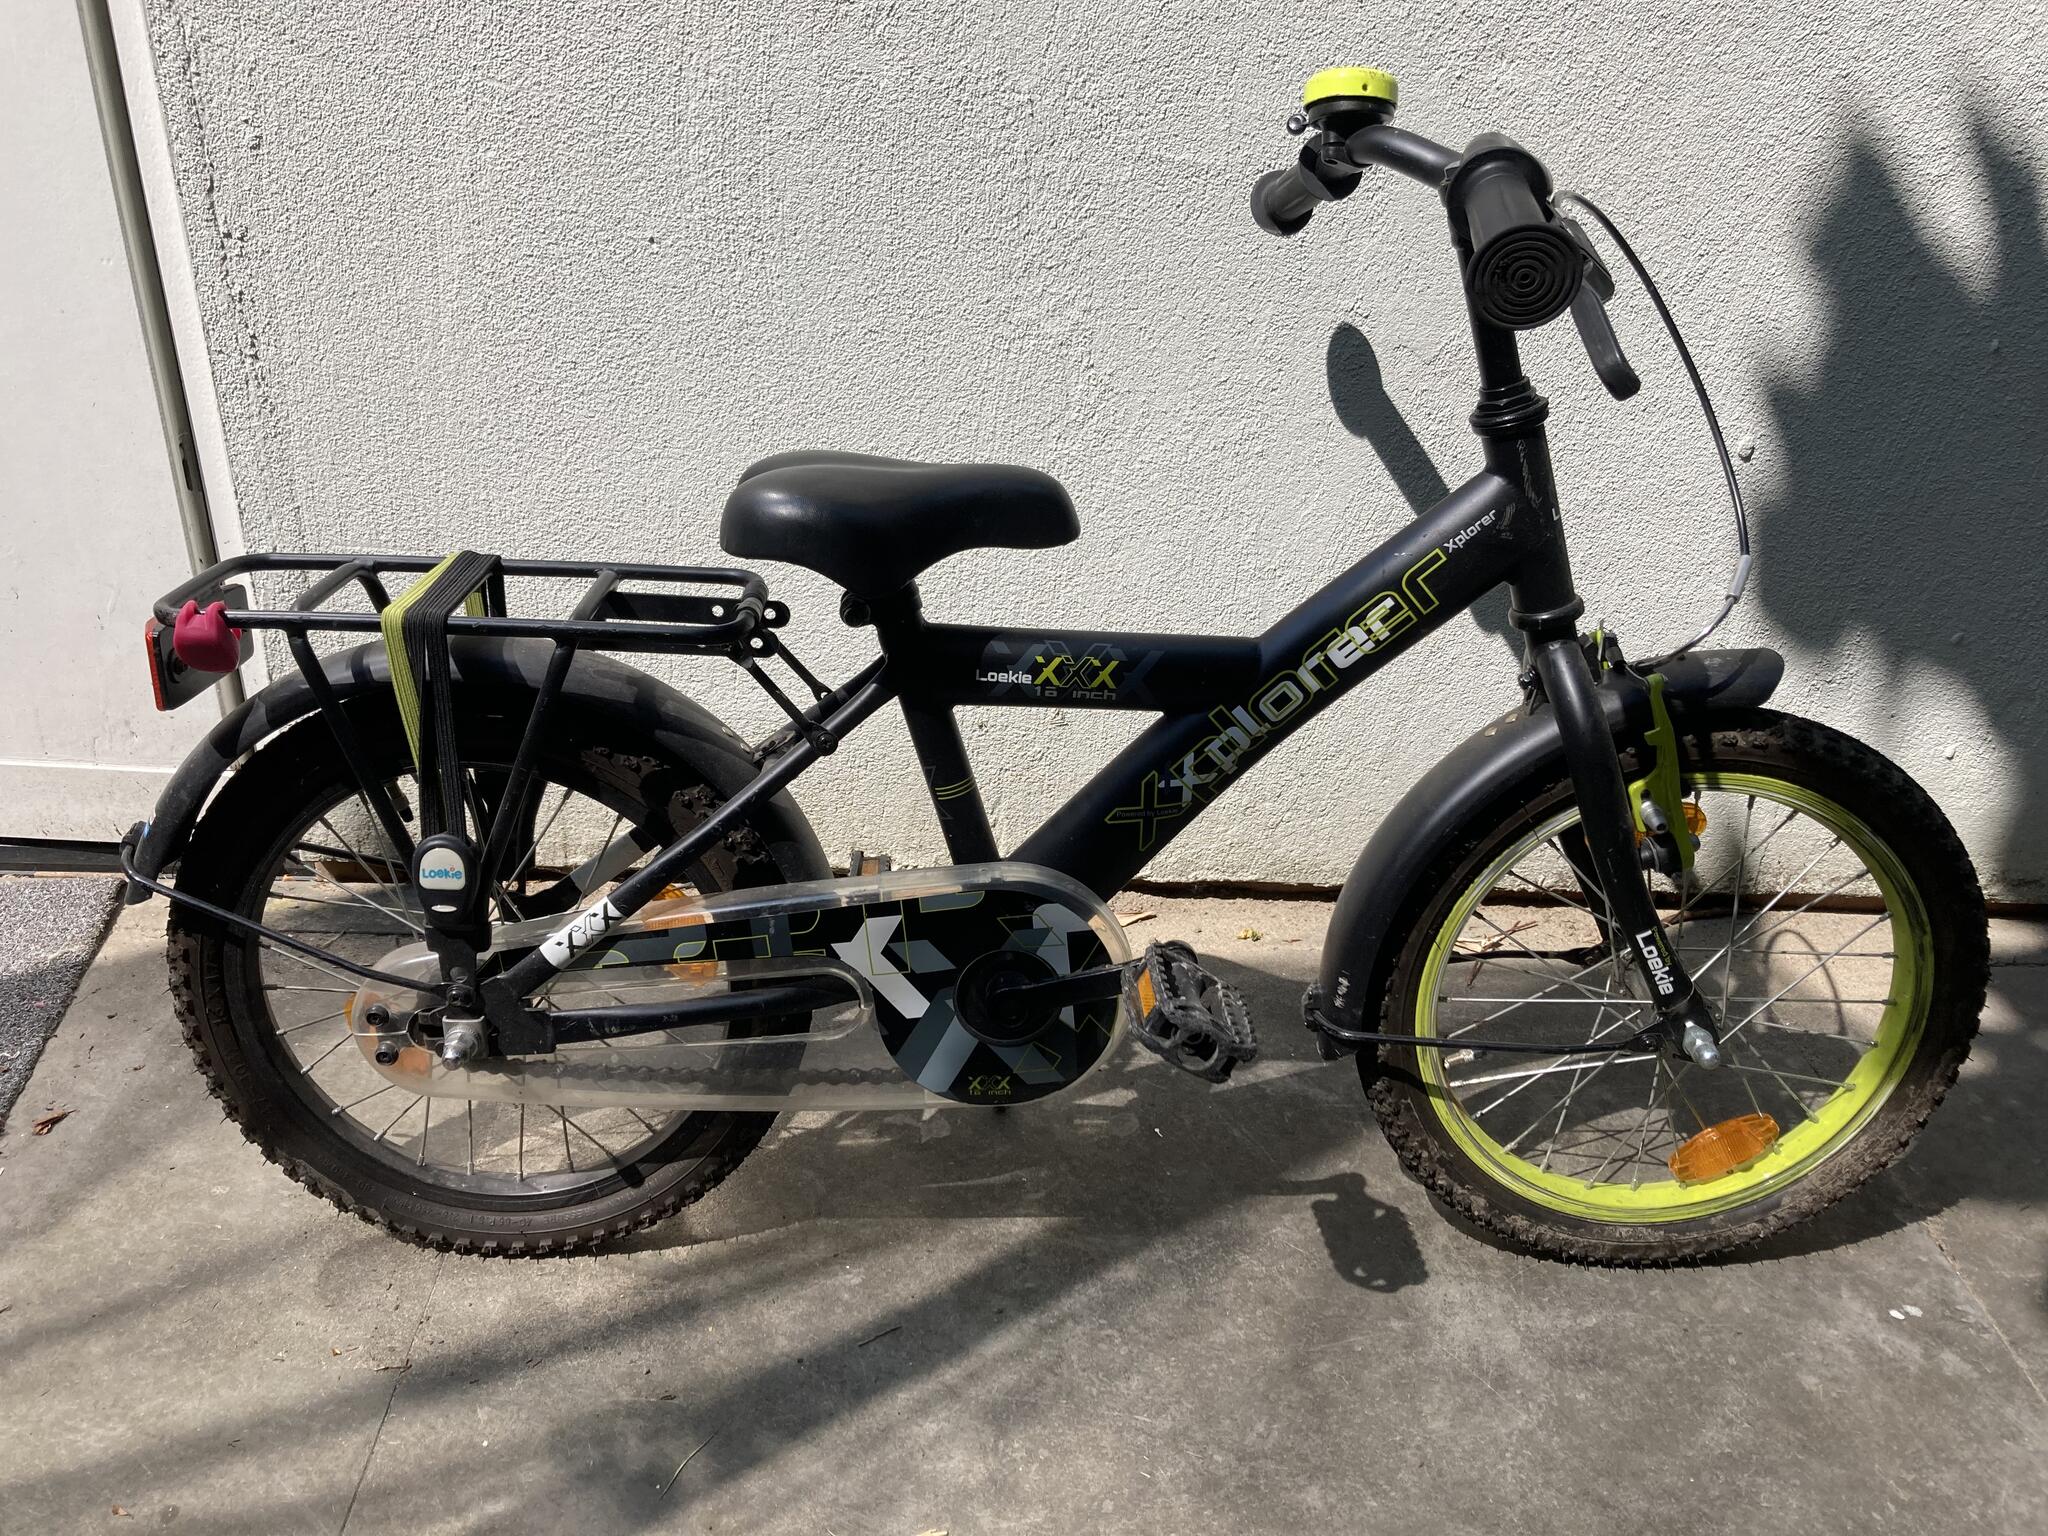 Joseph Banks doe alstublieft niet eenzaam Loekie Xplorer 16 inch fiets voor 35€ in Leiden, ZH | Vondsten — Nextdoor